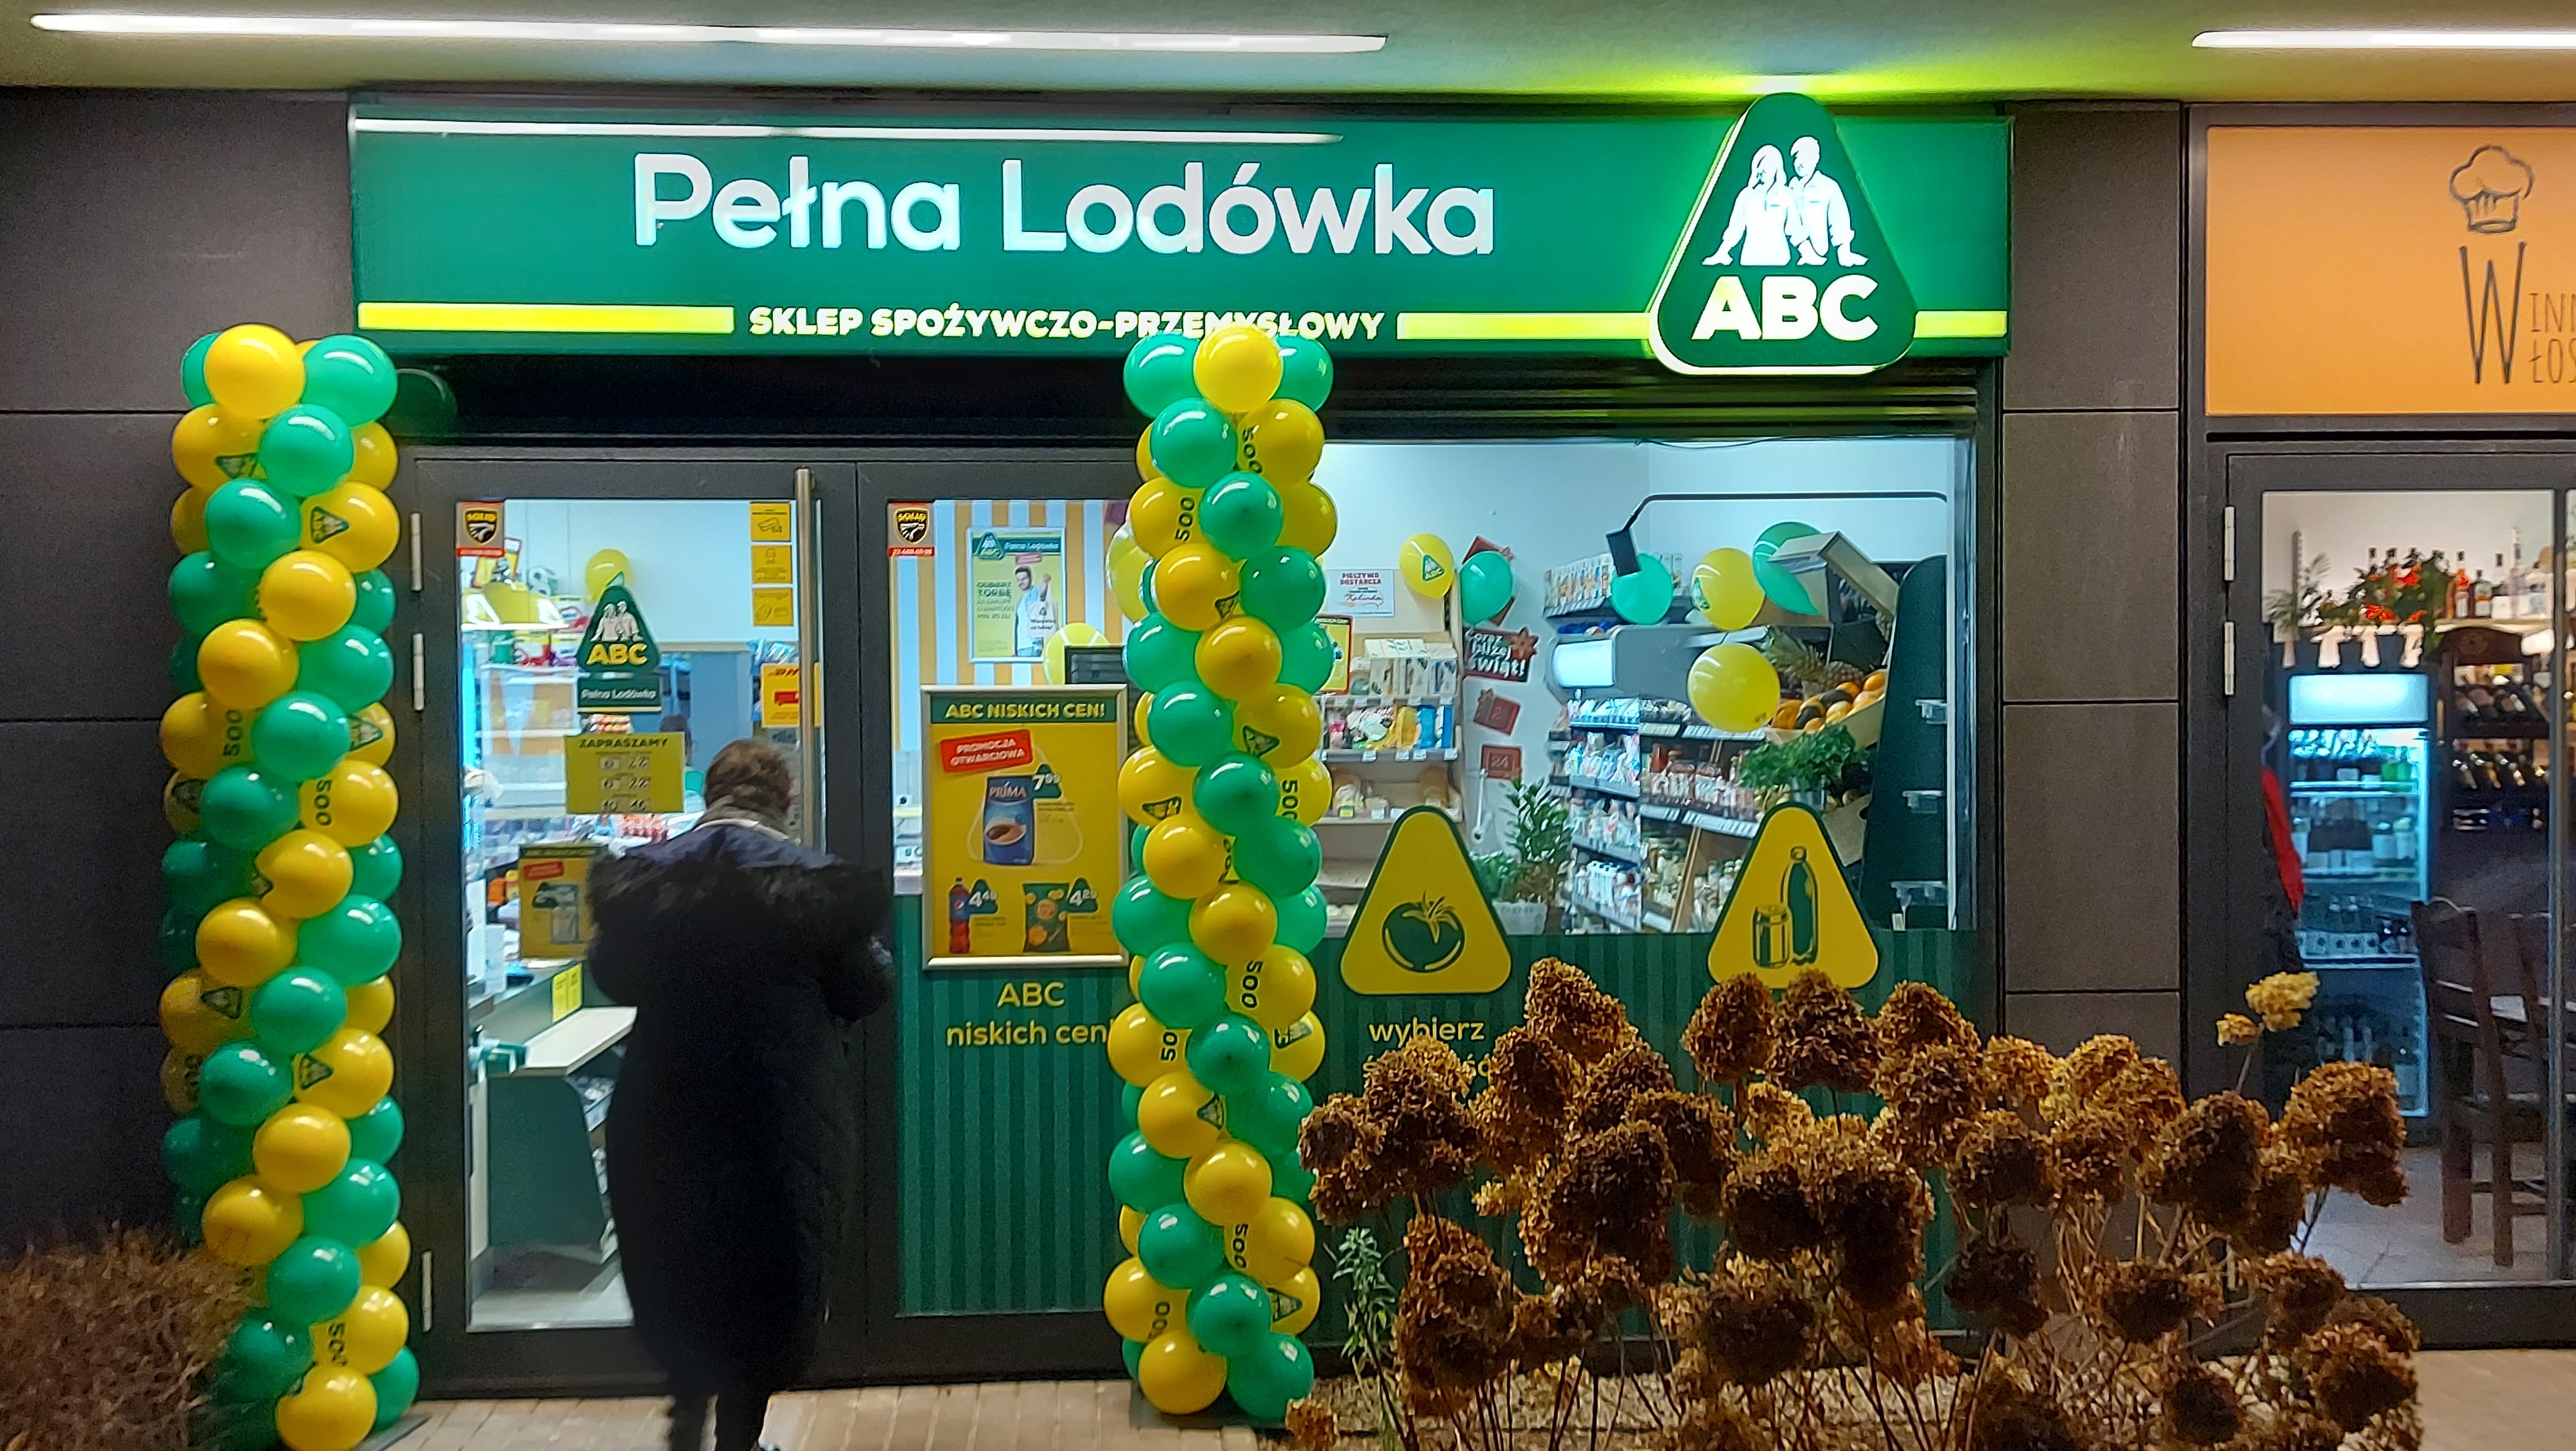 ABC Pełna Lodówka